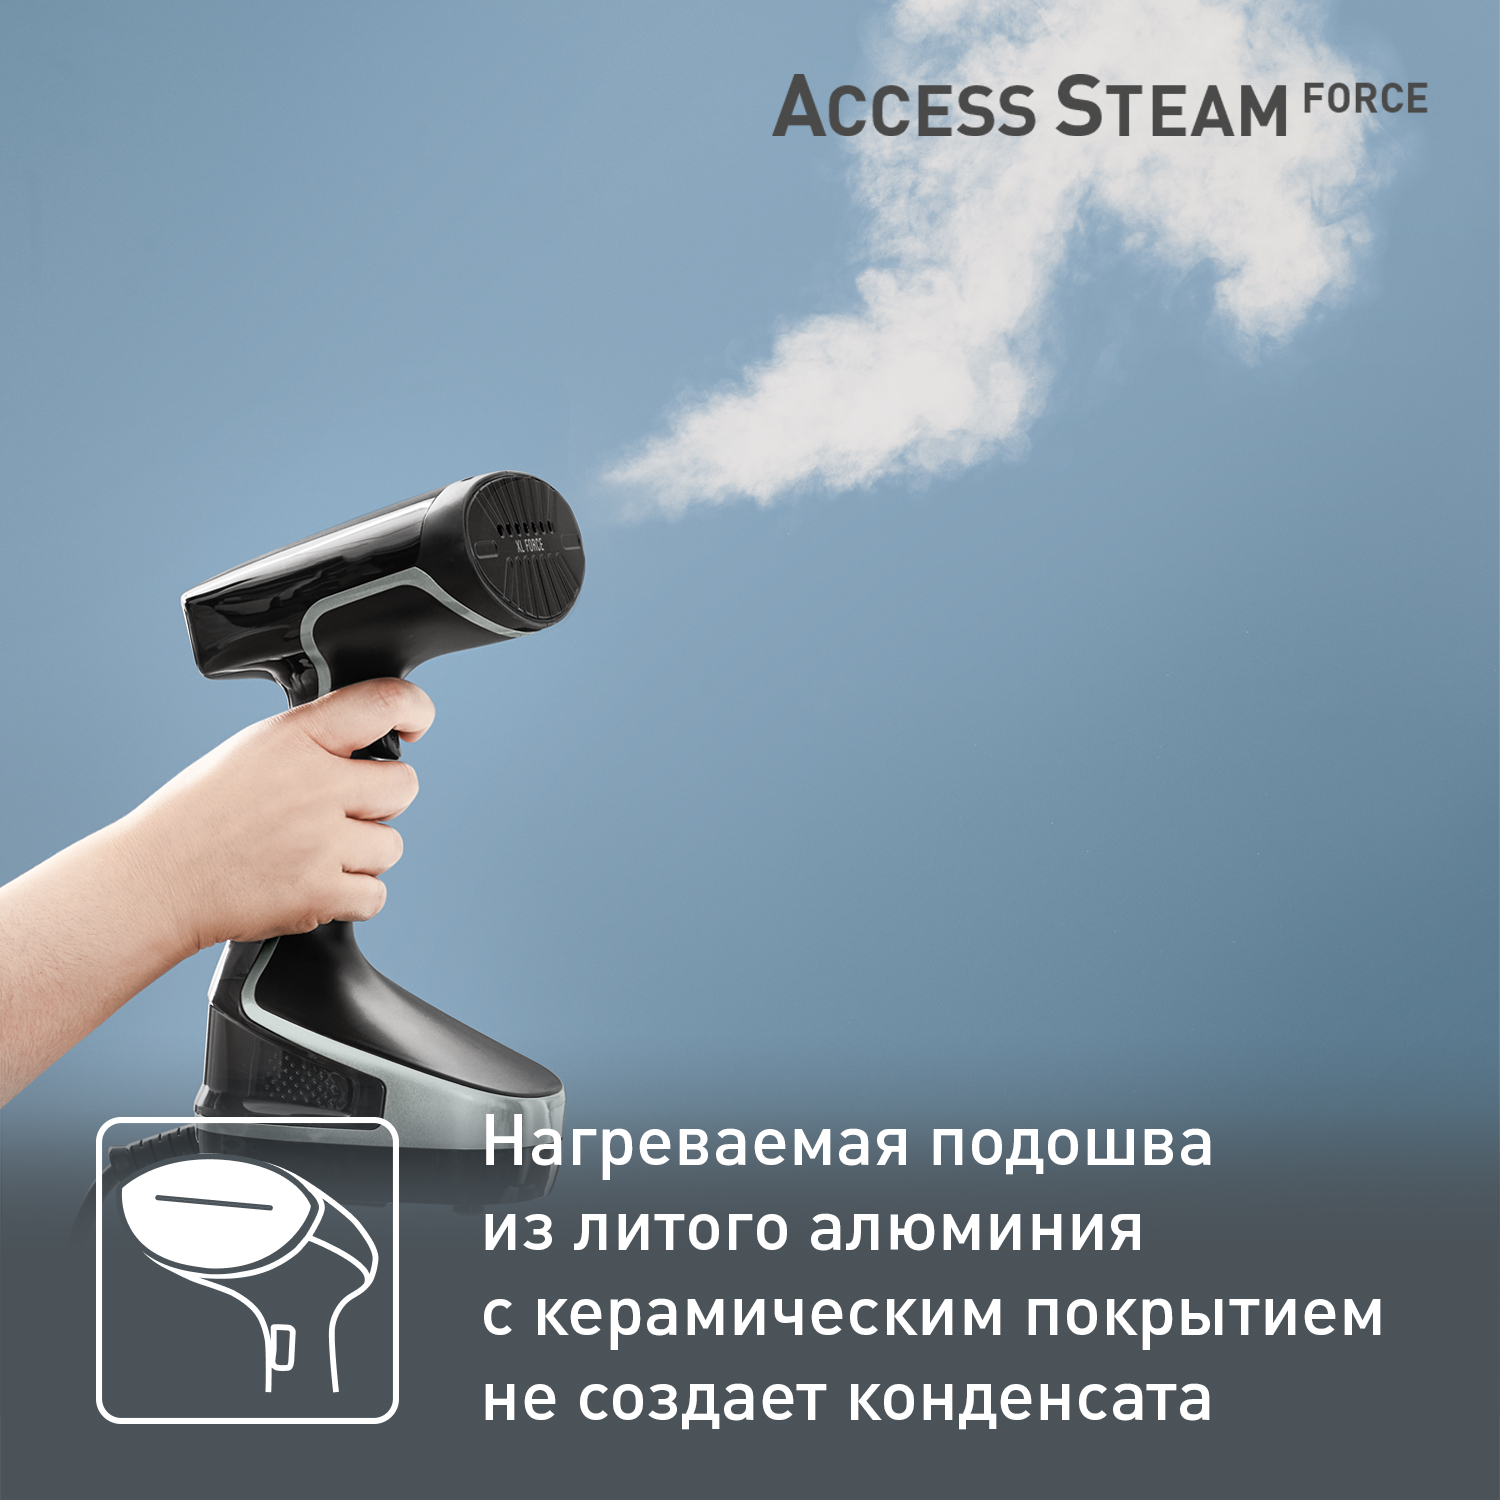 связаться с поддержкой steam access is denied 15 фото 100